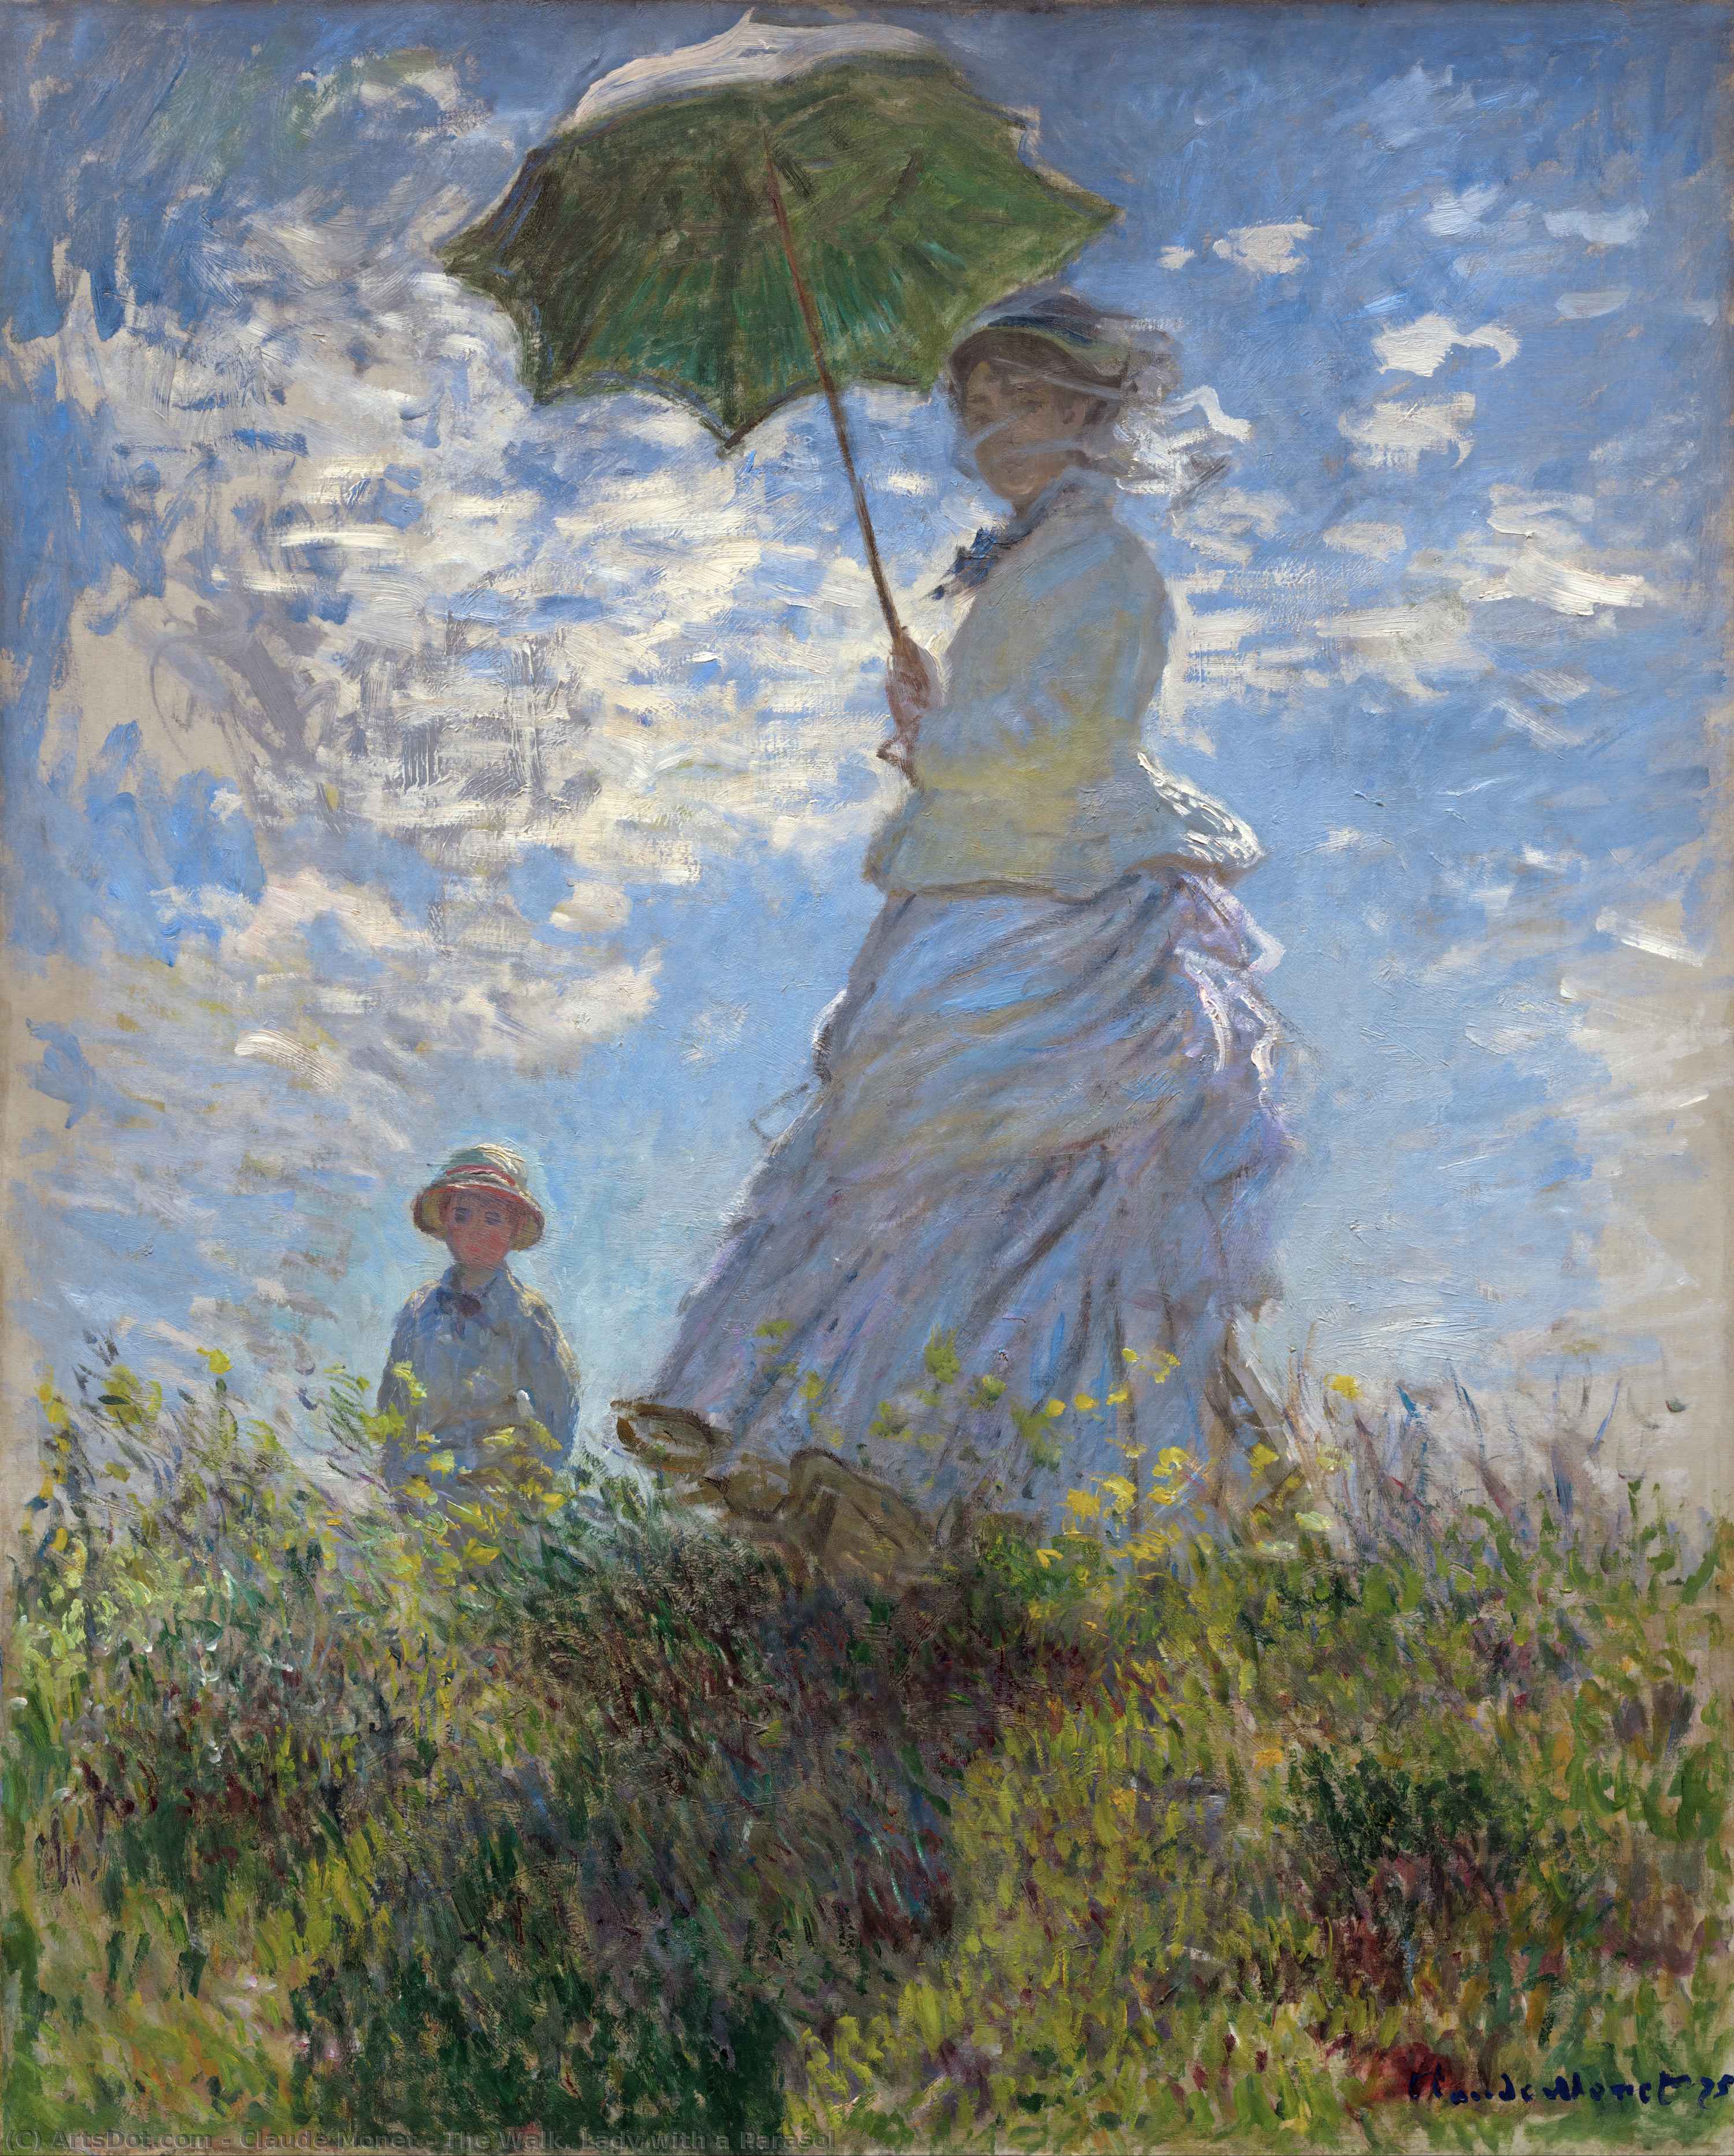 Achat Reproductions D'art La Marche. Dame avec Parasol, 1875 de Claude Monet (1840-1926, France) | ArtsDot.com